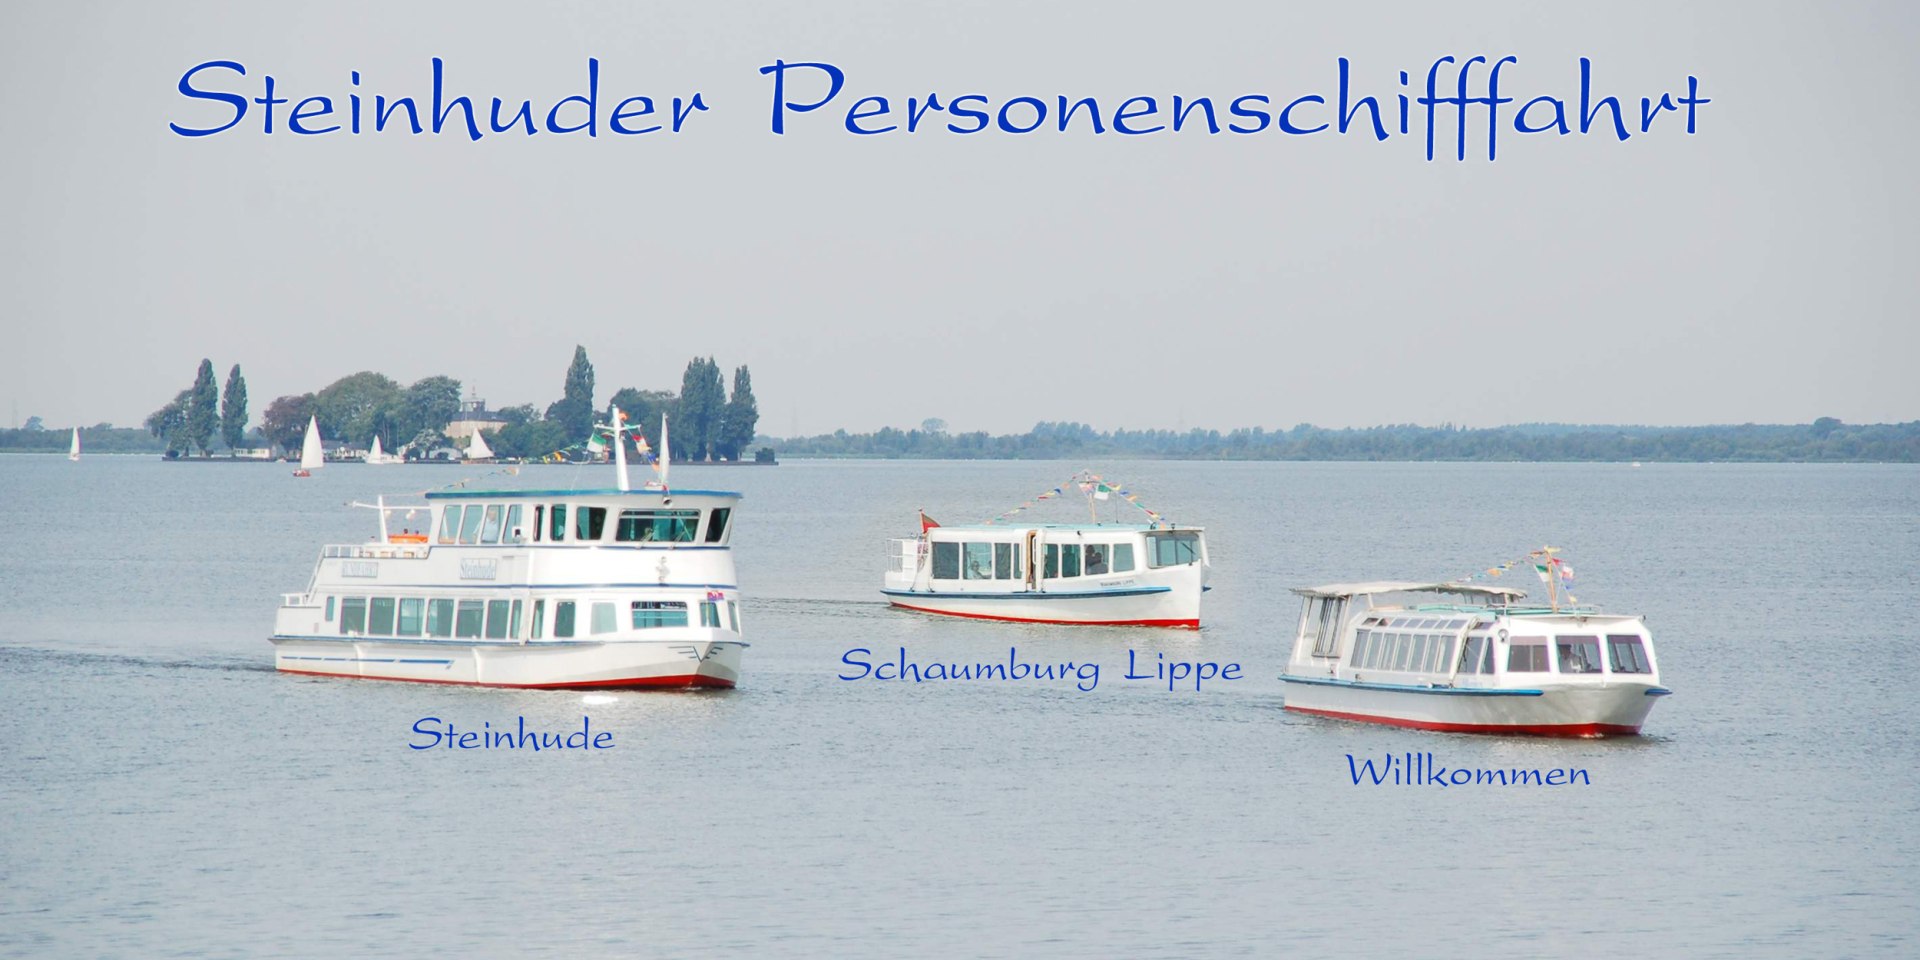 Die Flotte der Steinhuder Personenschifffahrt auf dem Steinhuder Meer, © Steinhuder Personenschifffahrt / Wilhelm Hartmann